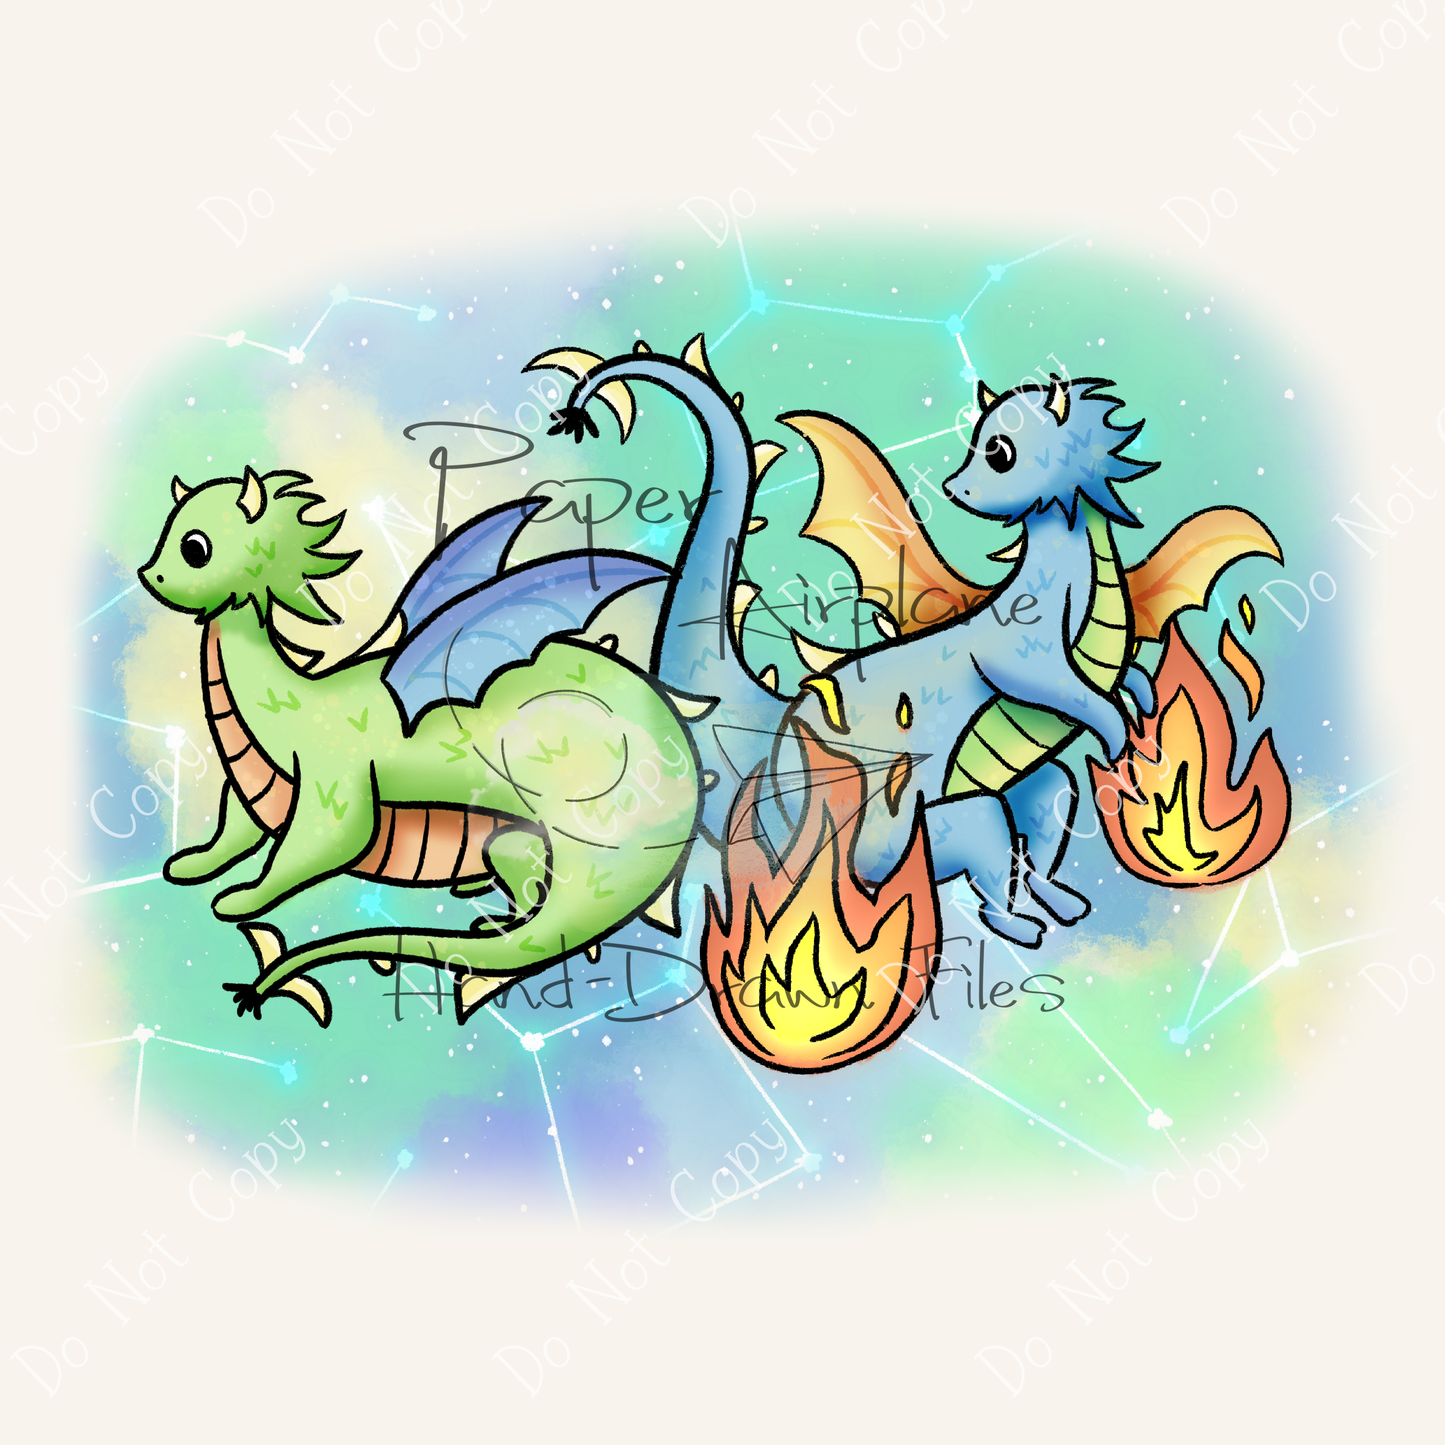 Celestial Dragons (Original)